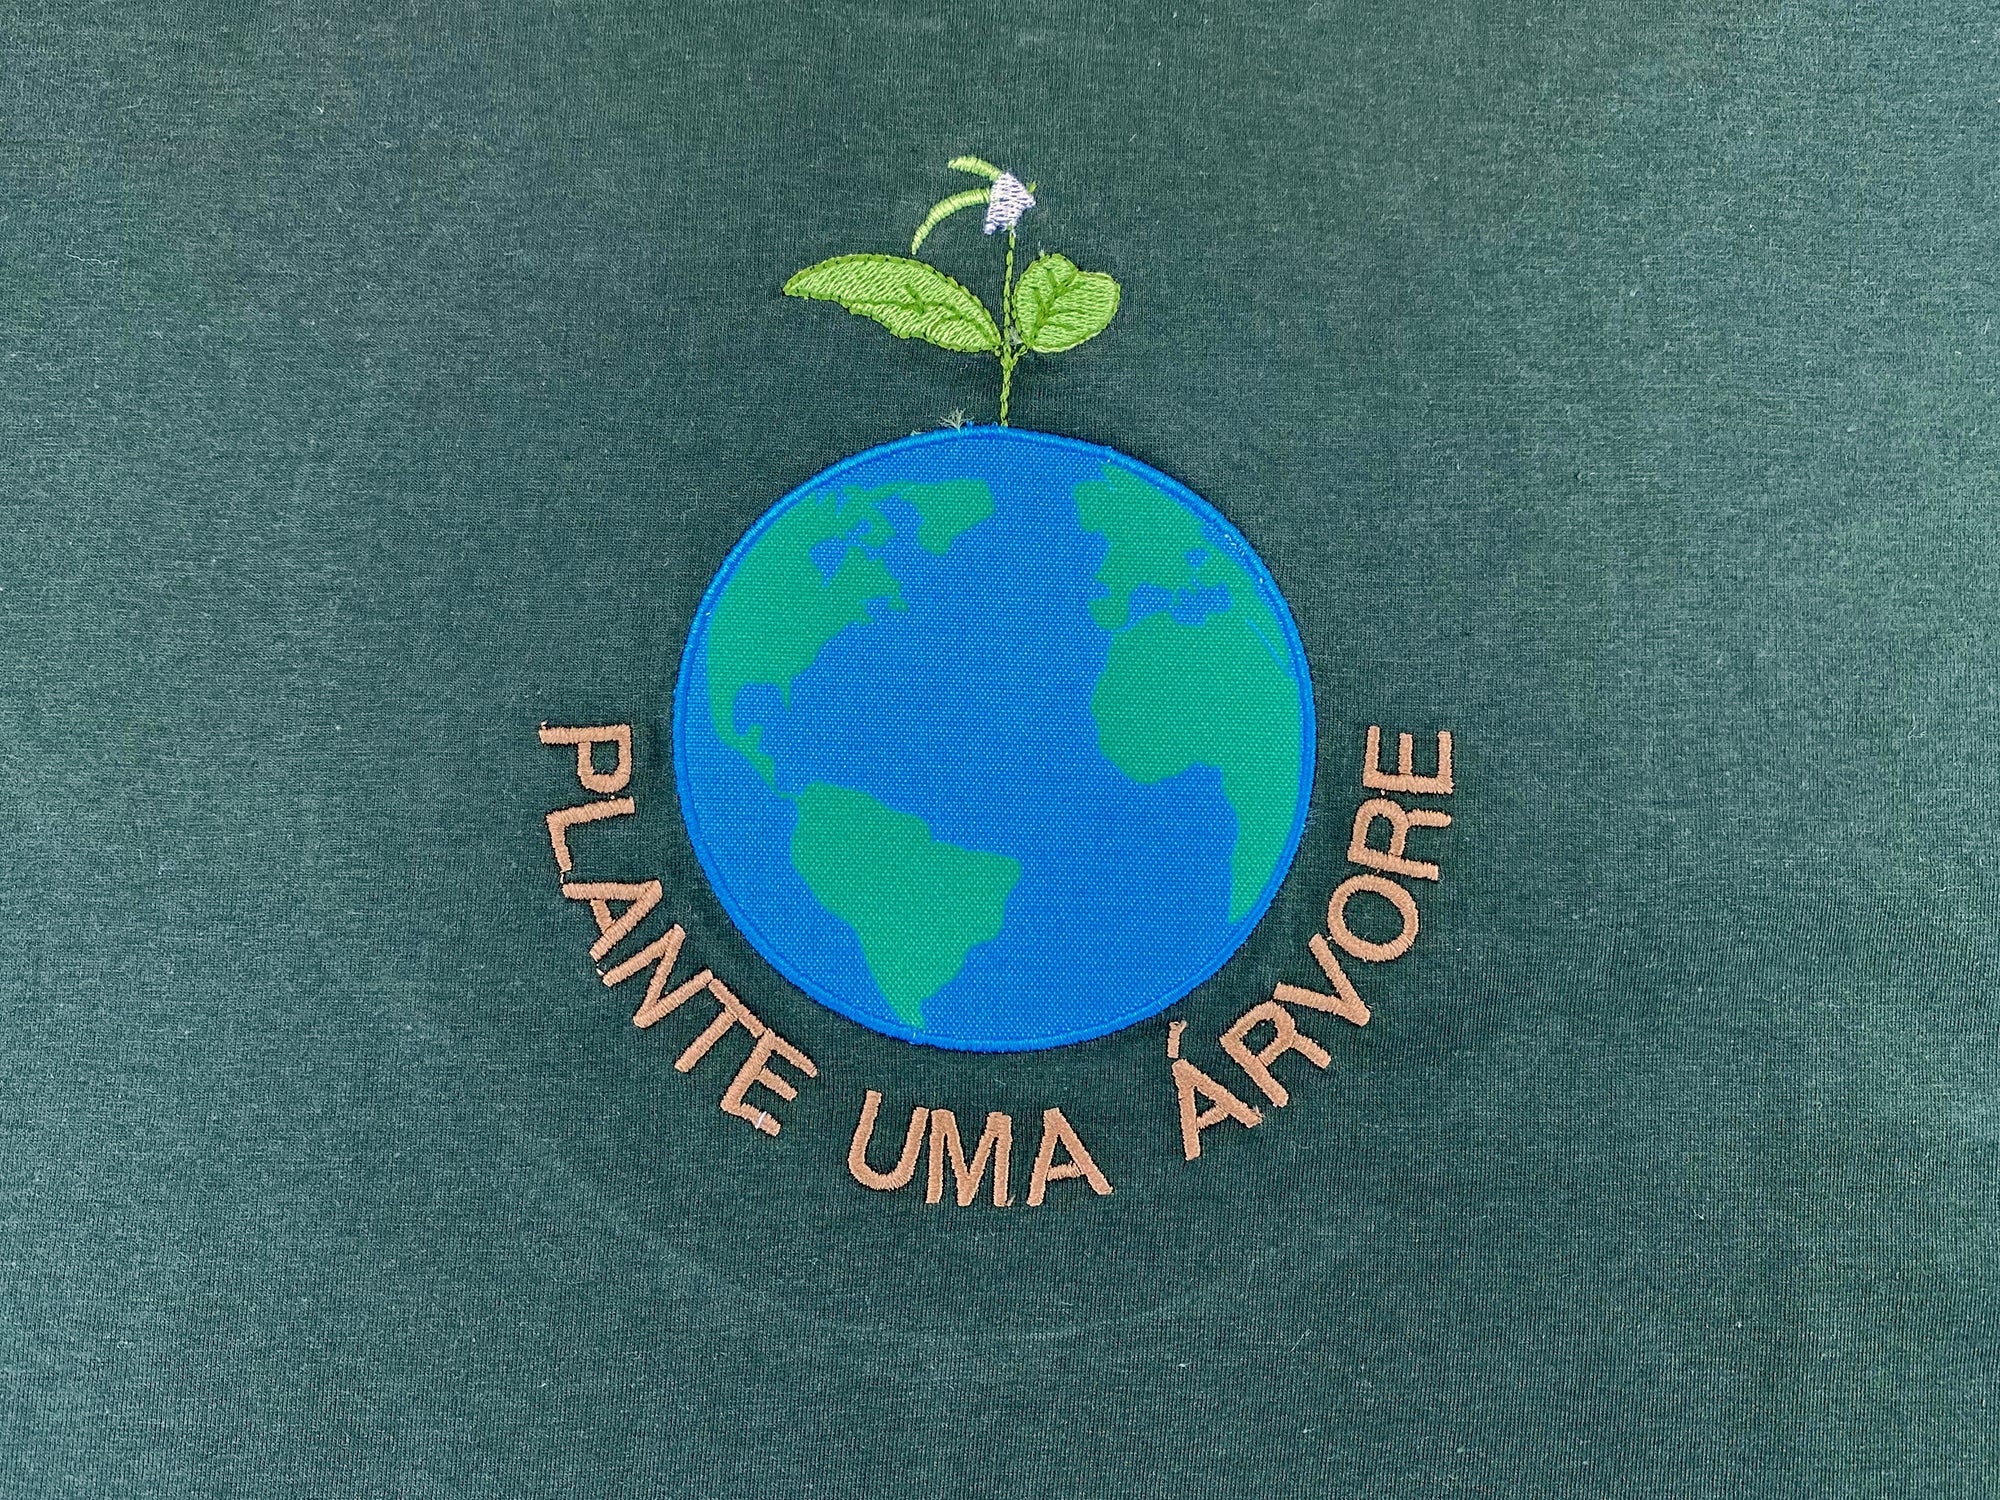 Camiseta Campanha Plante Uma Árvore